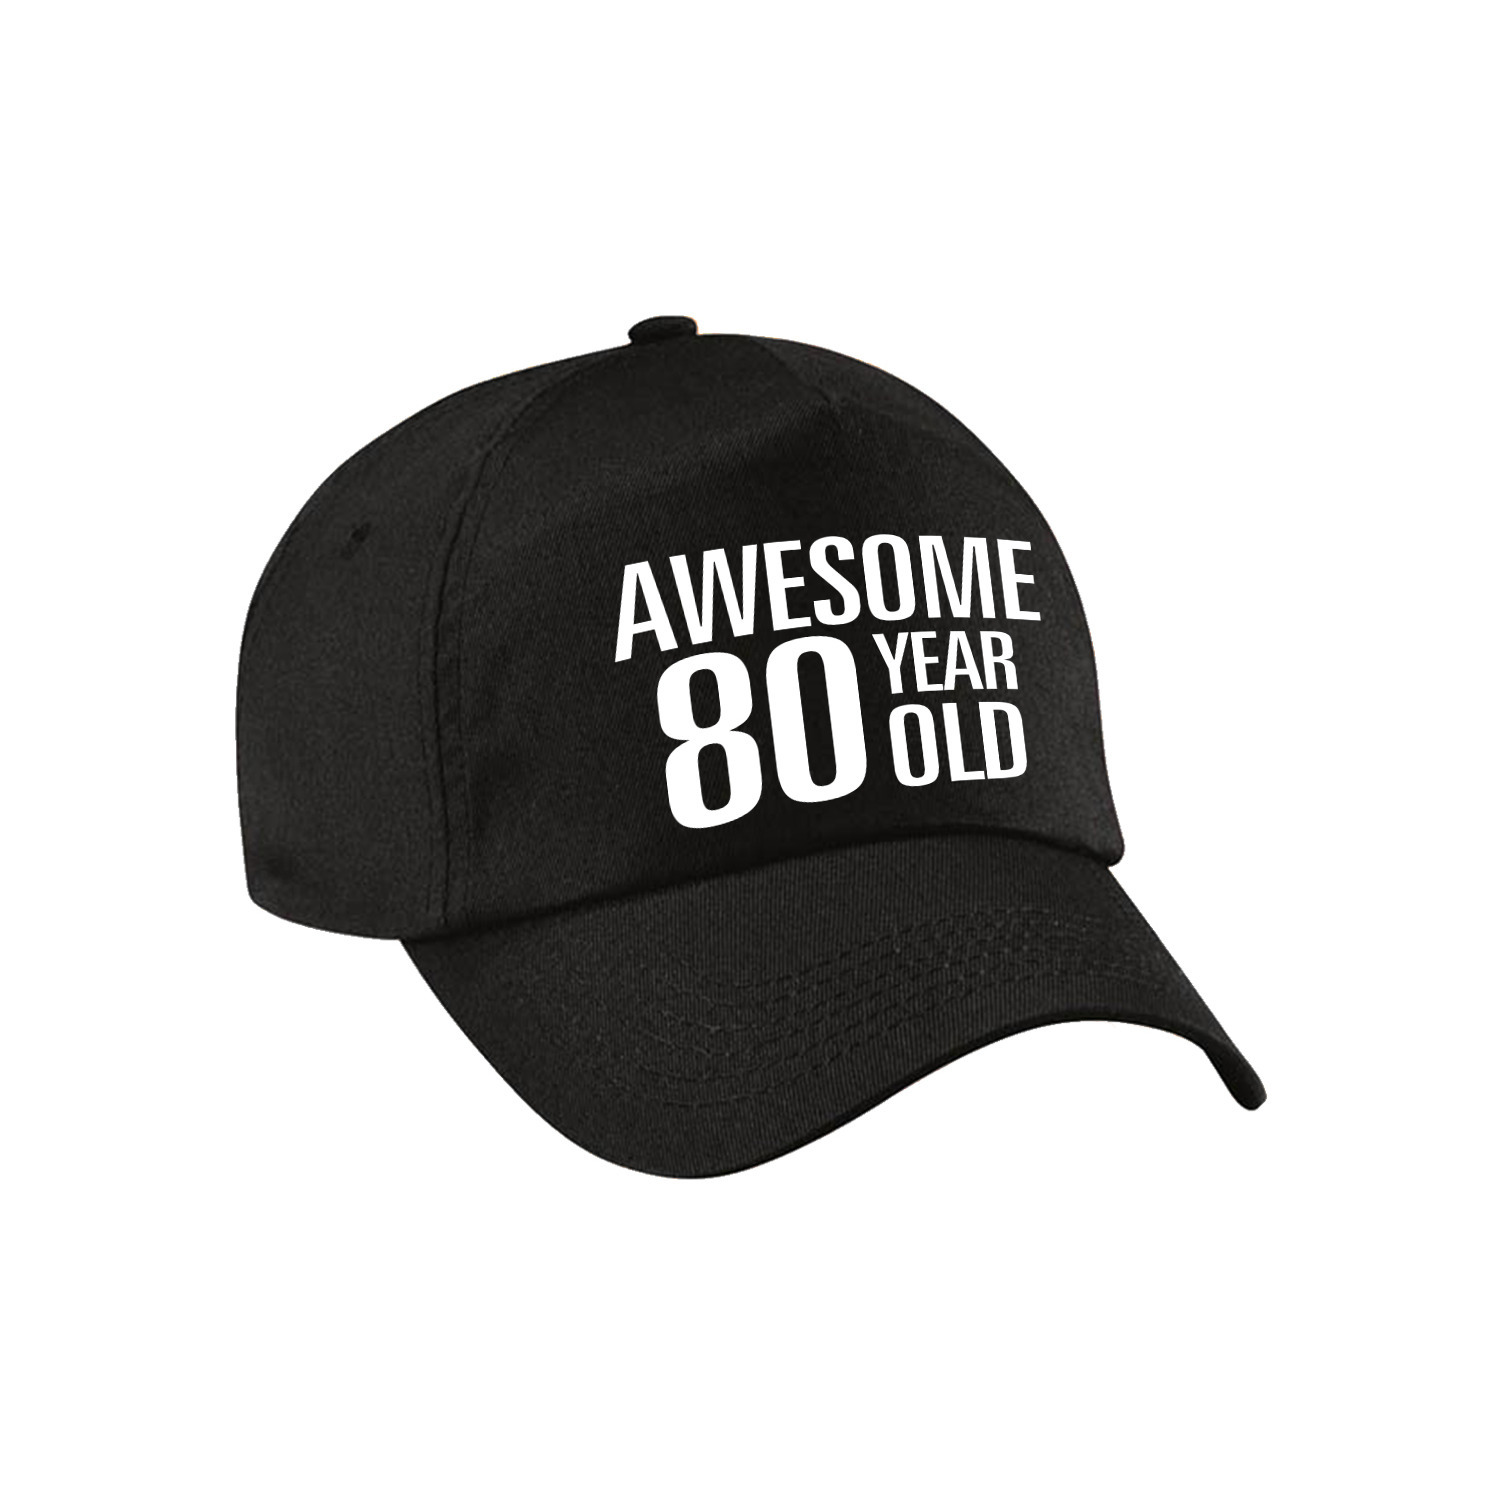 Awesome 80 year old verjaardag pet / cap zwart voor dames en heren